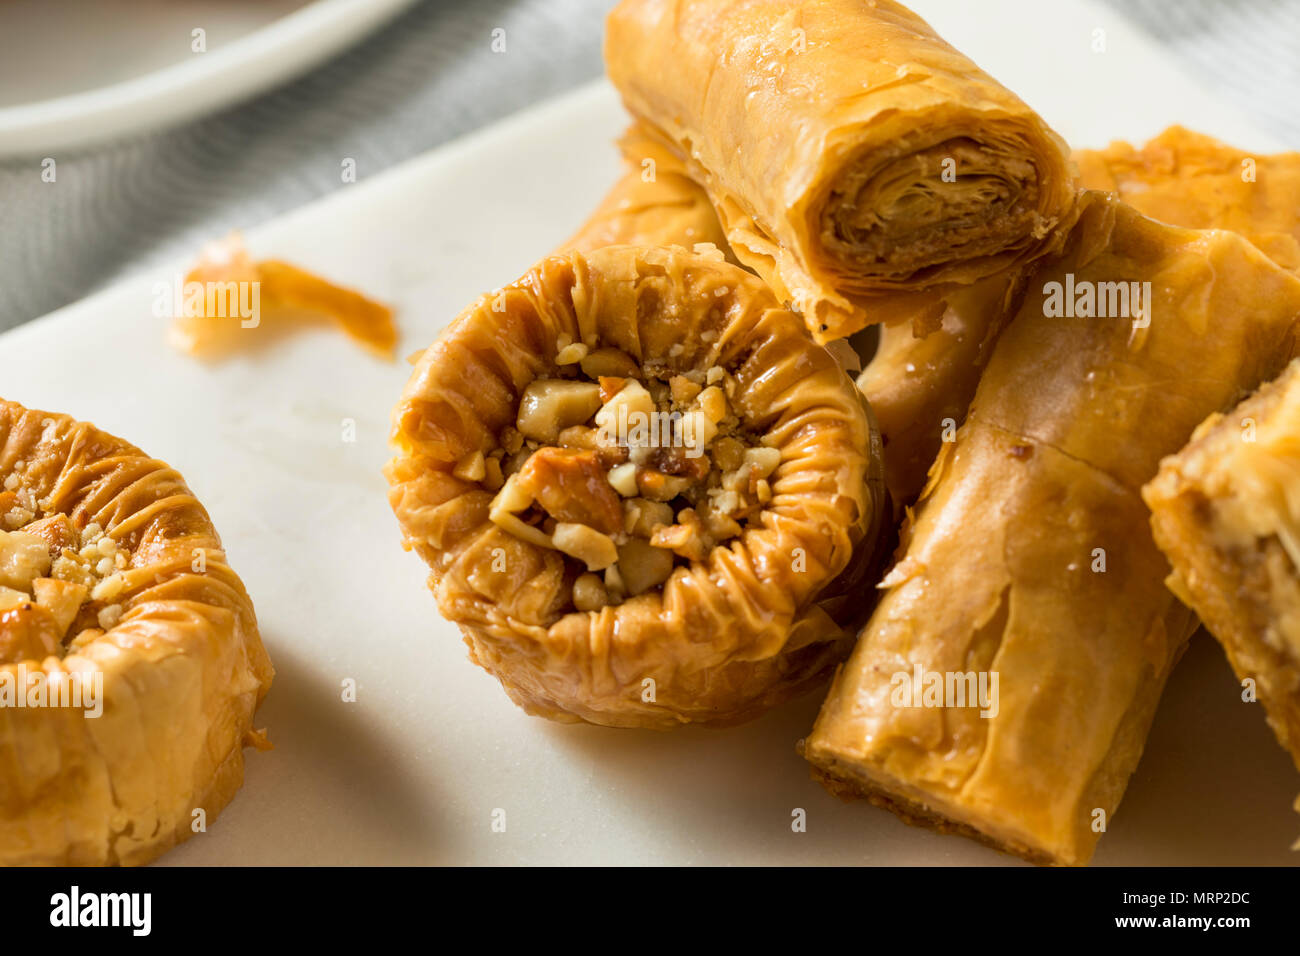 Baklava turc fait maison avec des pâtisseries au miel et noix Banque D'Images